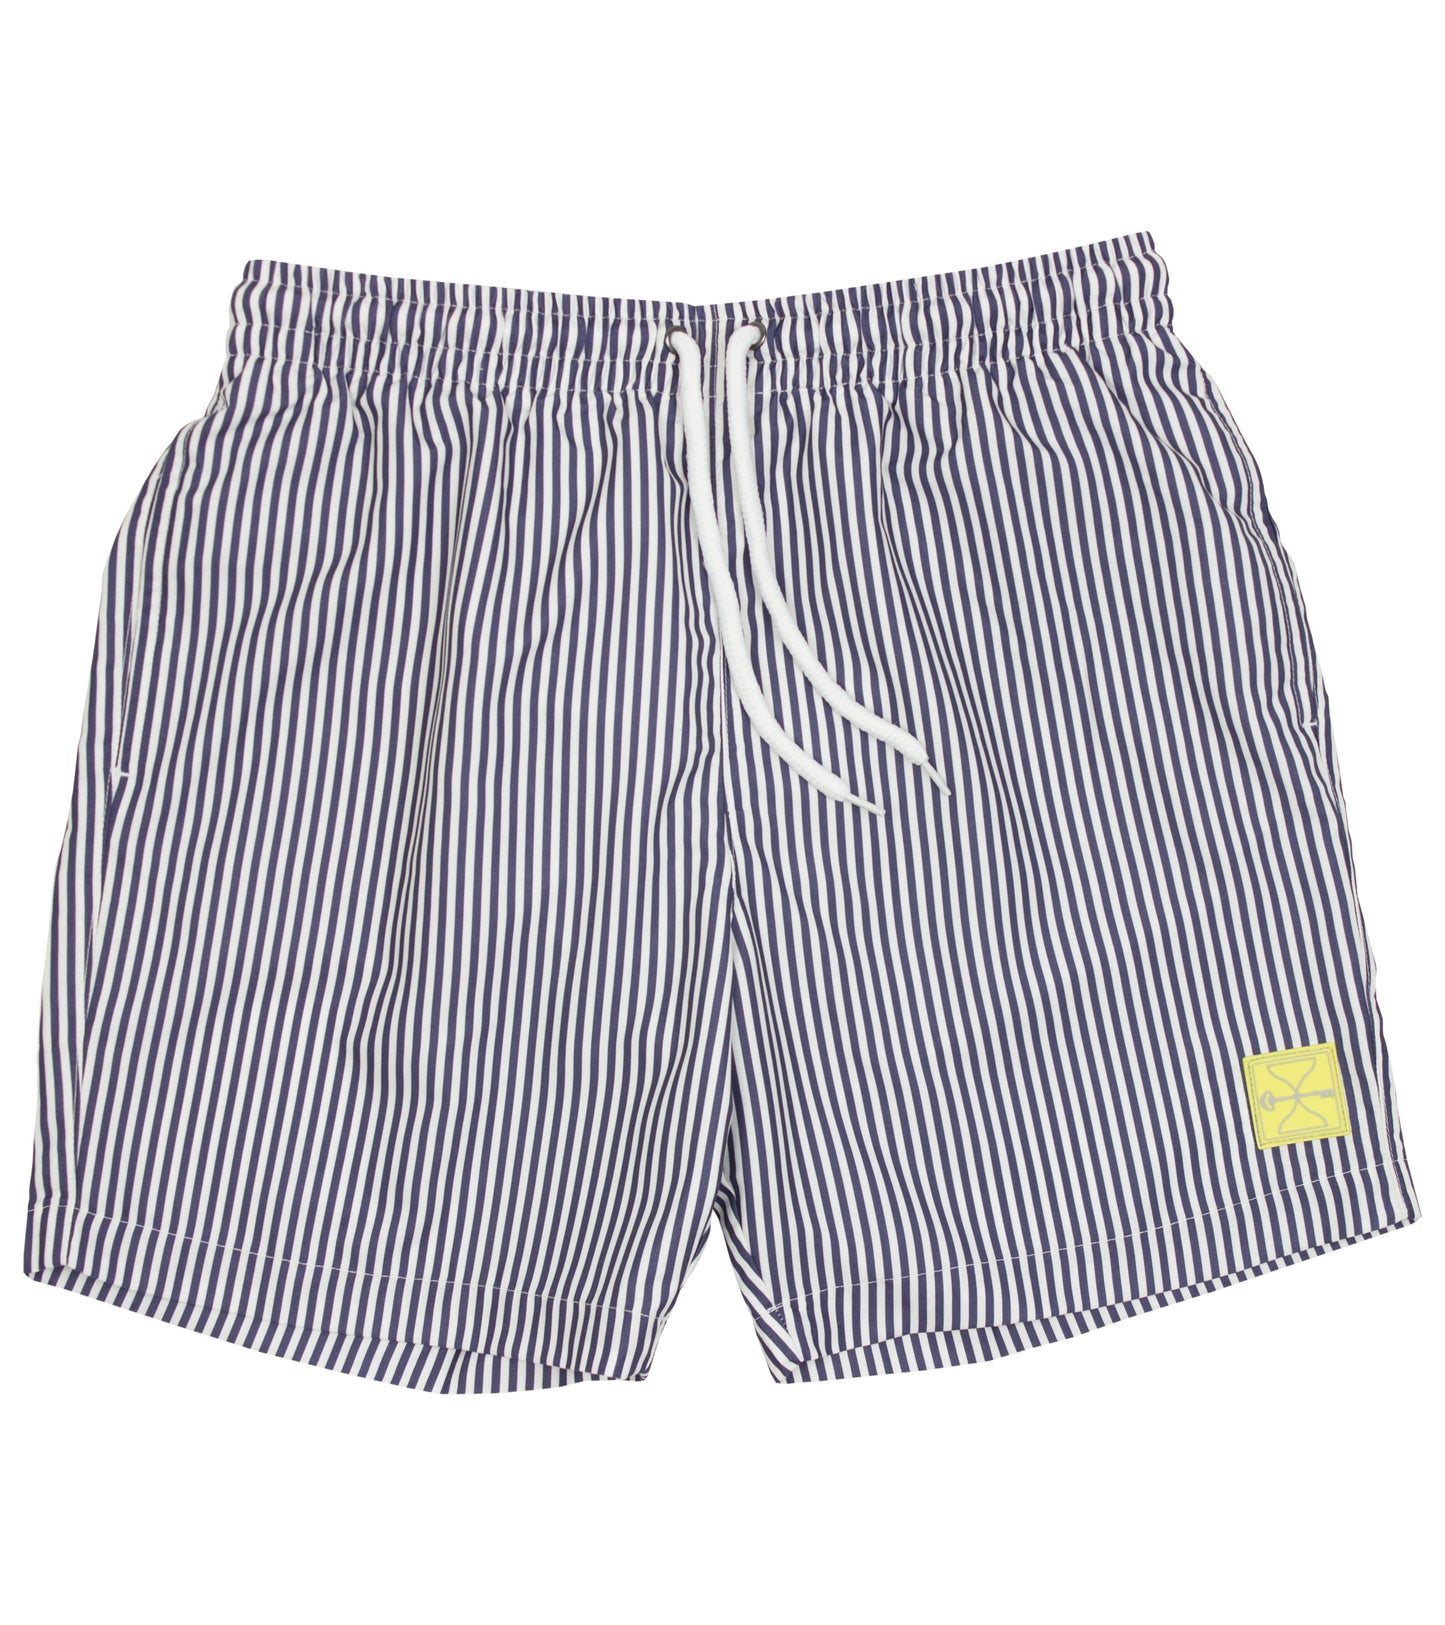 Navy/White Swim Shorts - Hourglass (Yellow Badge)